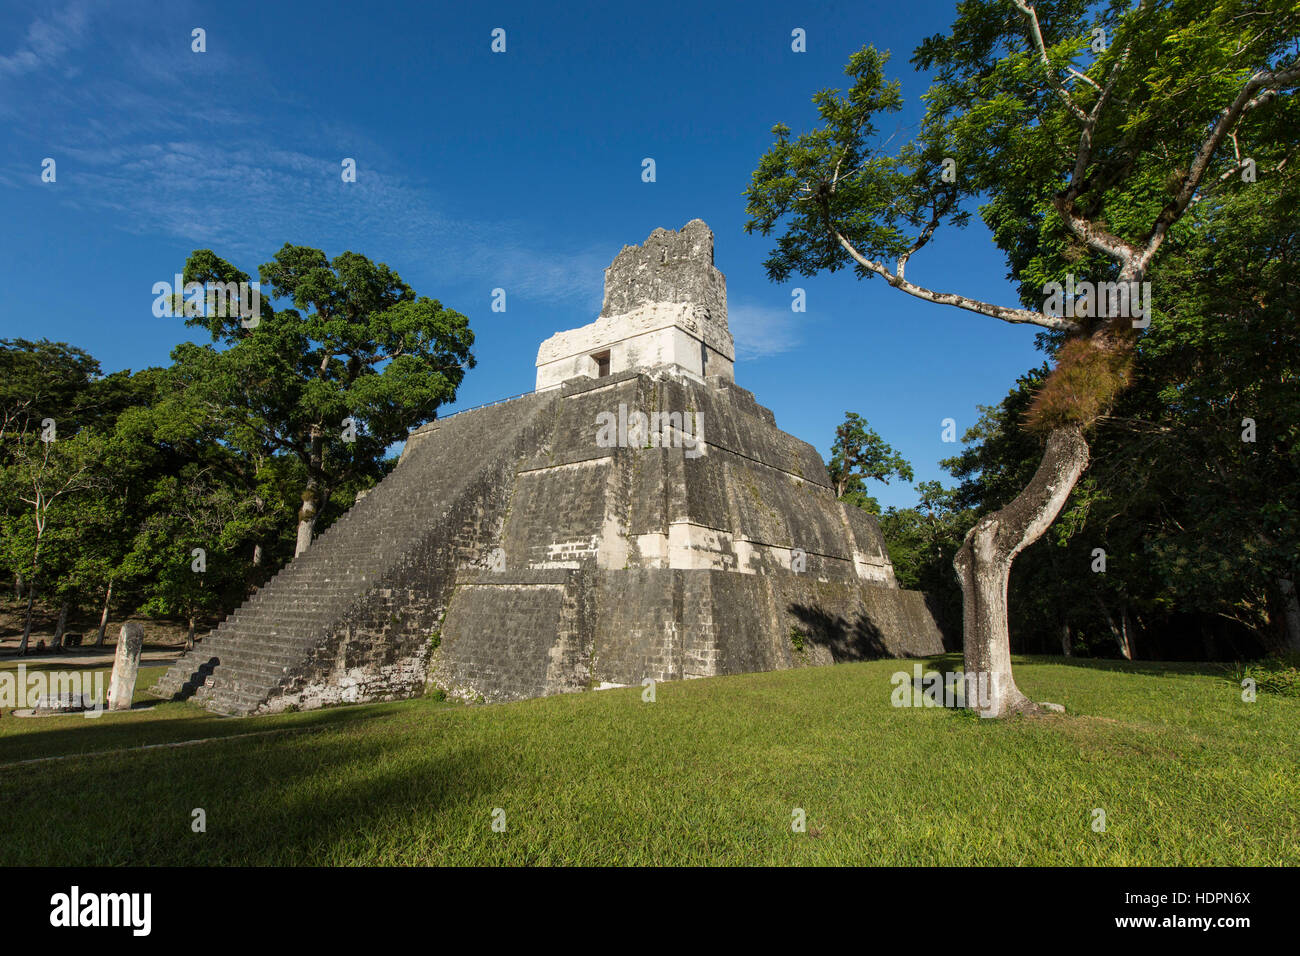 Tempel II oder Tempel der Maske um 700 n. Chr. gebaut wurde und ist 38 Meter beziehungsweise 125 Fuß hoch.  Nationalpark Tikal in Guatemala ist eine archäologische si Stockfoto